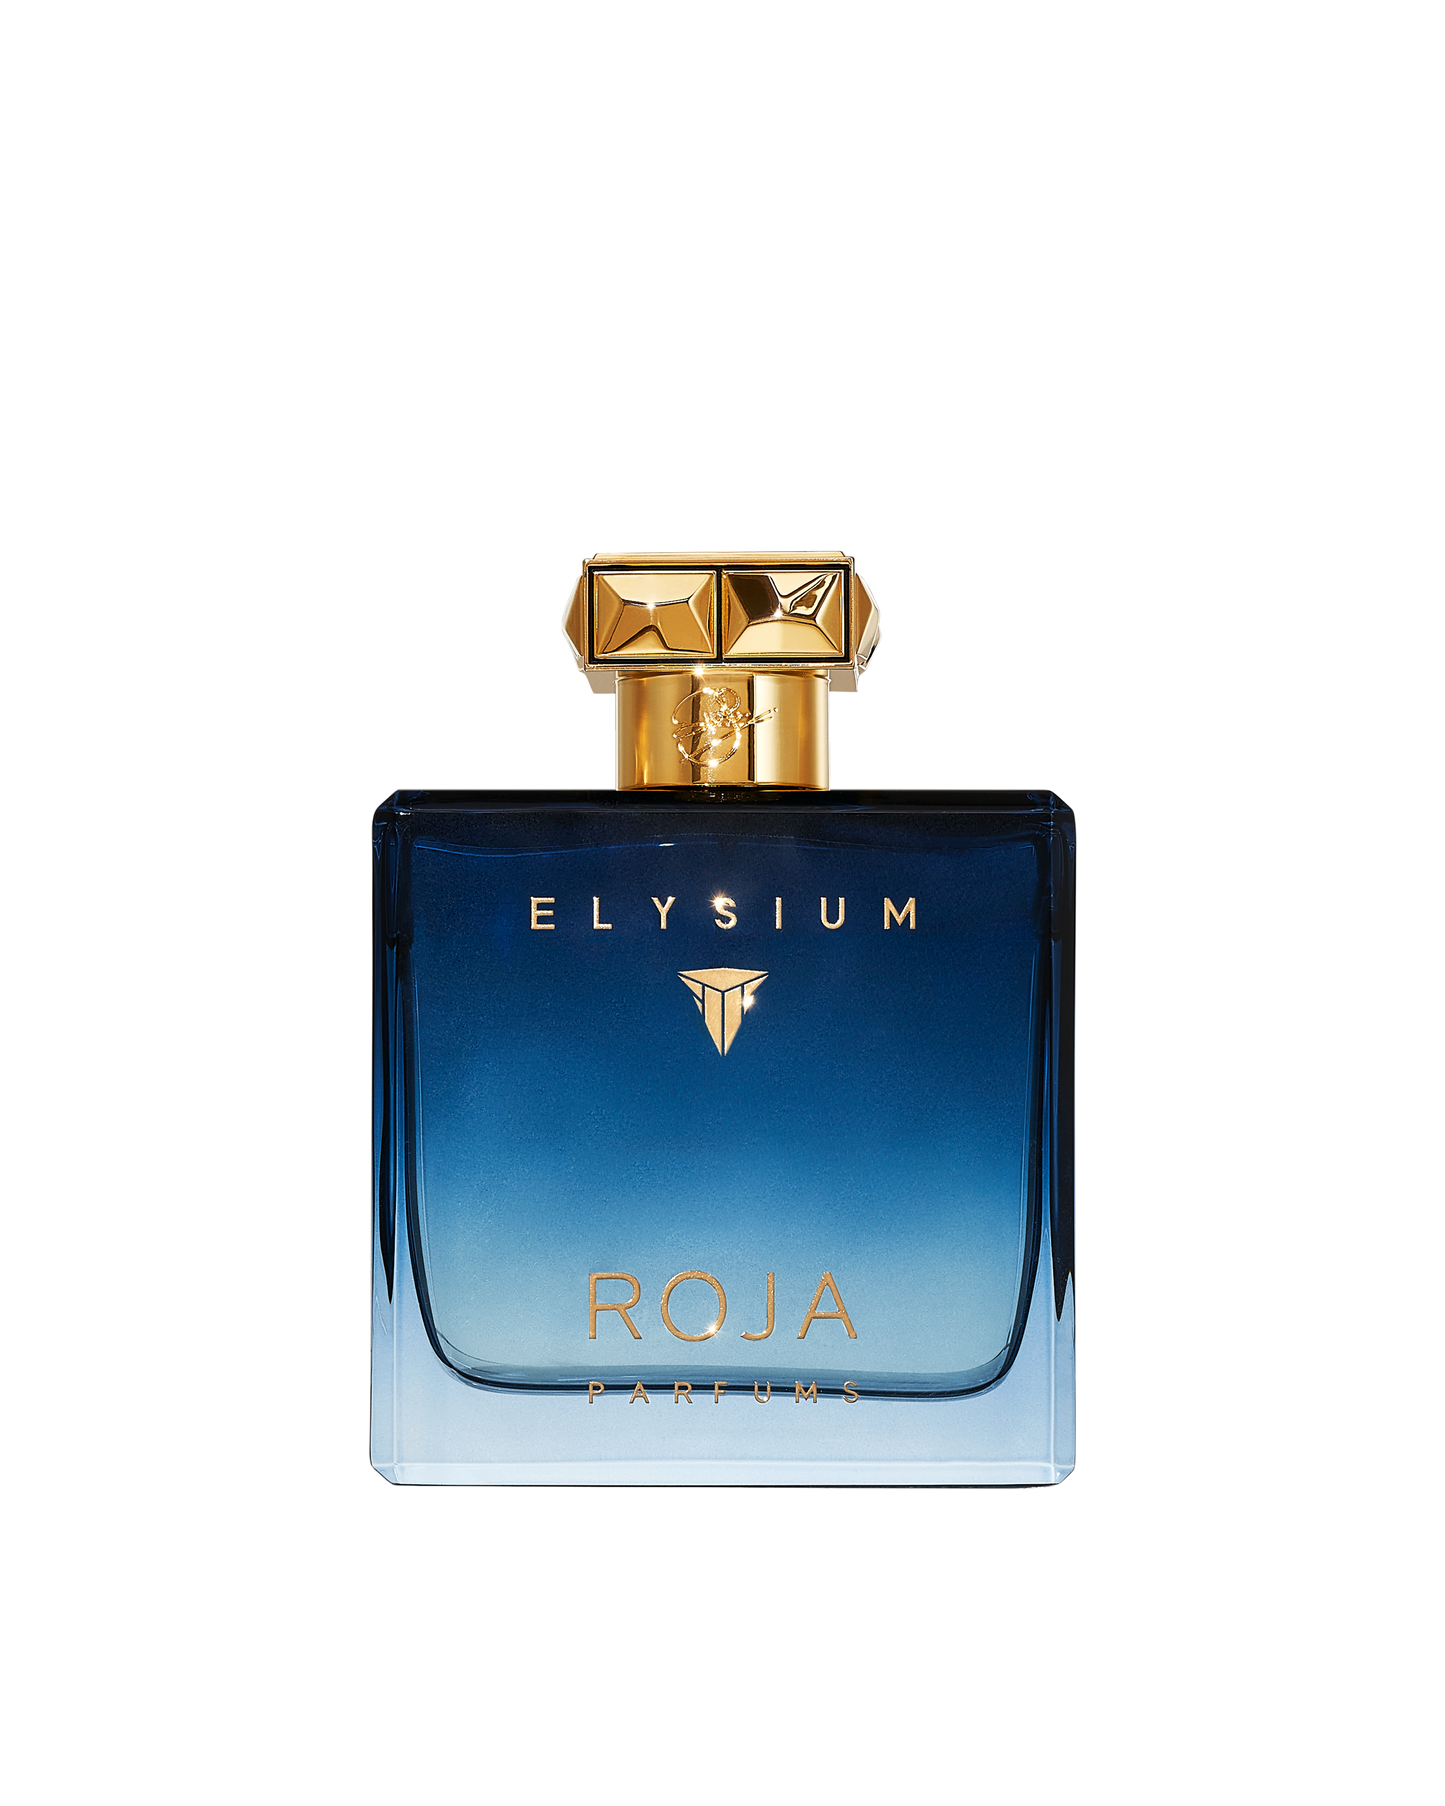 Elysium Pour Homme Parfum Cologne Roja Parfums 100ml